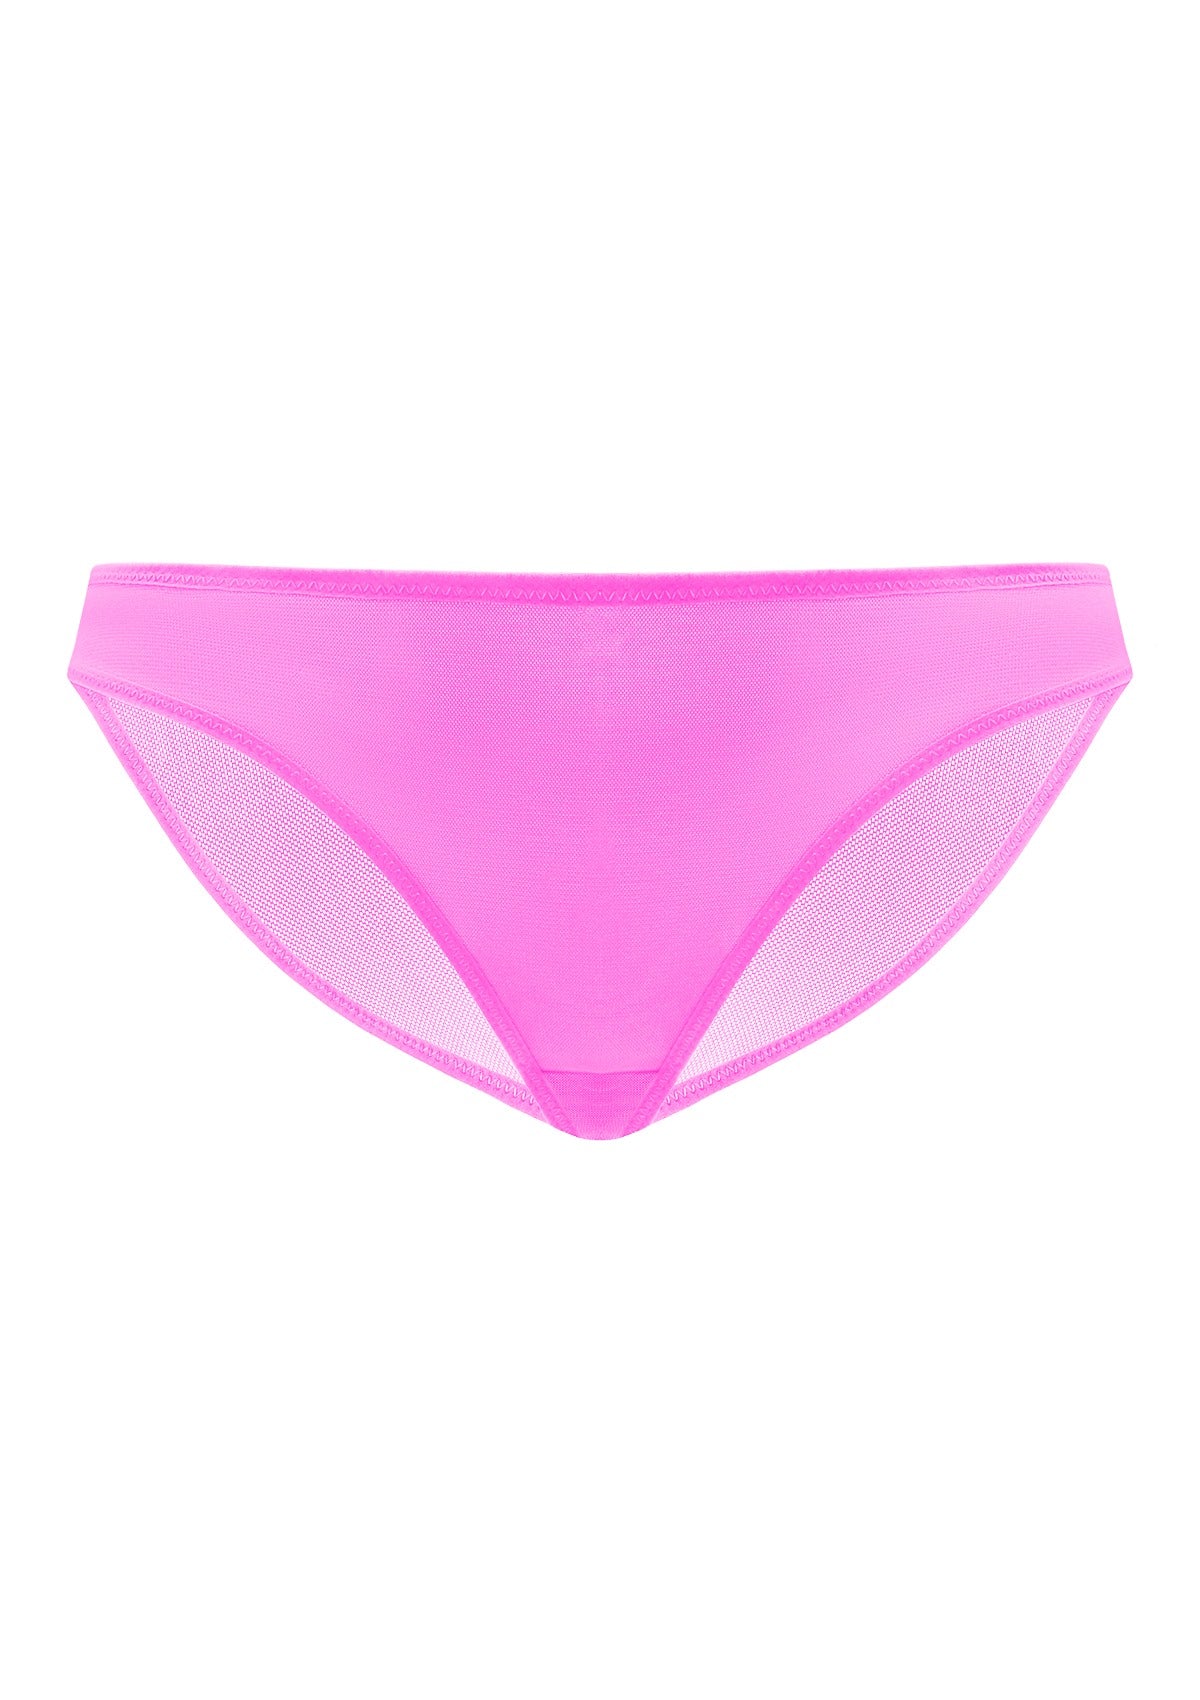 HSIA Billie Smooth Sheer Mesh Lightweight Soft Comfy Bikini Underwear - L / Dark Green